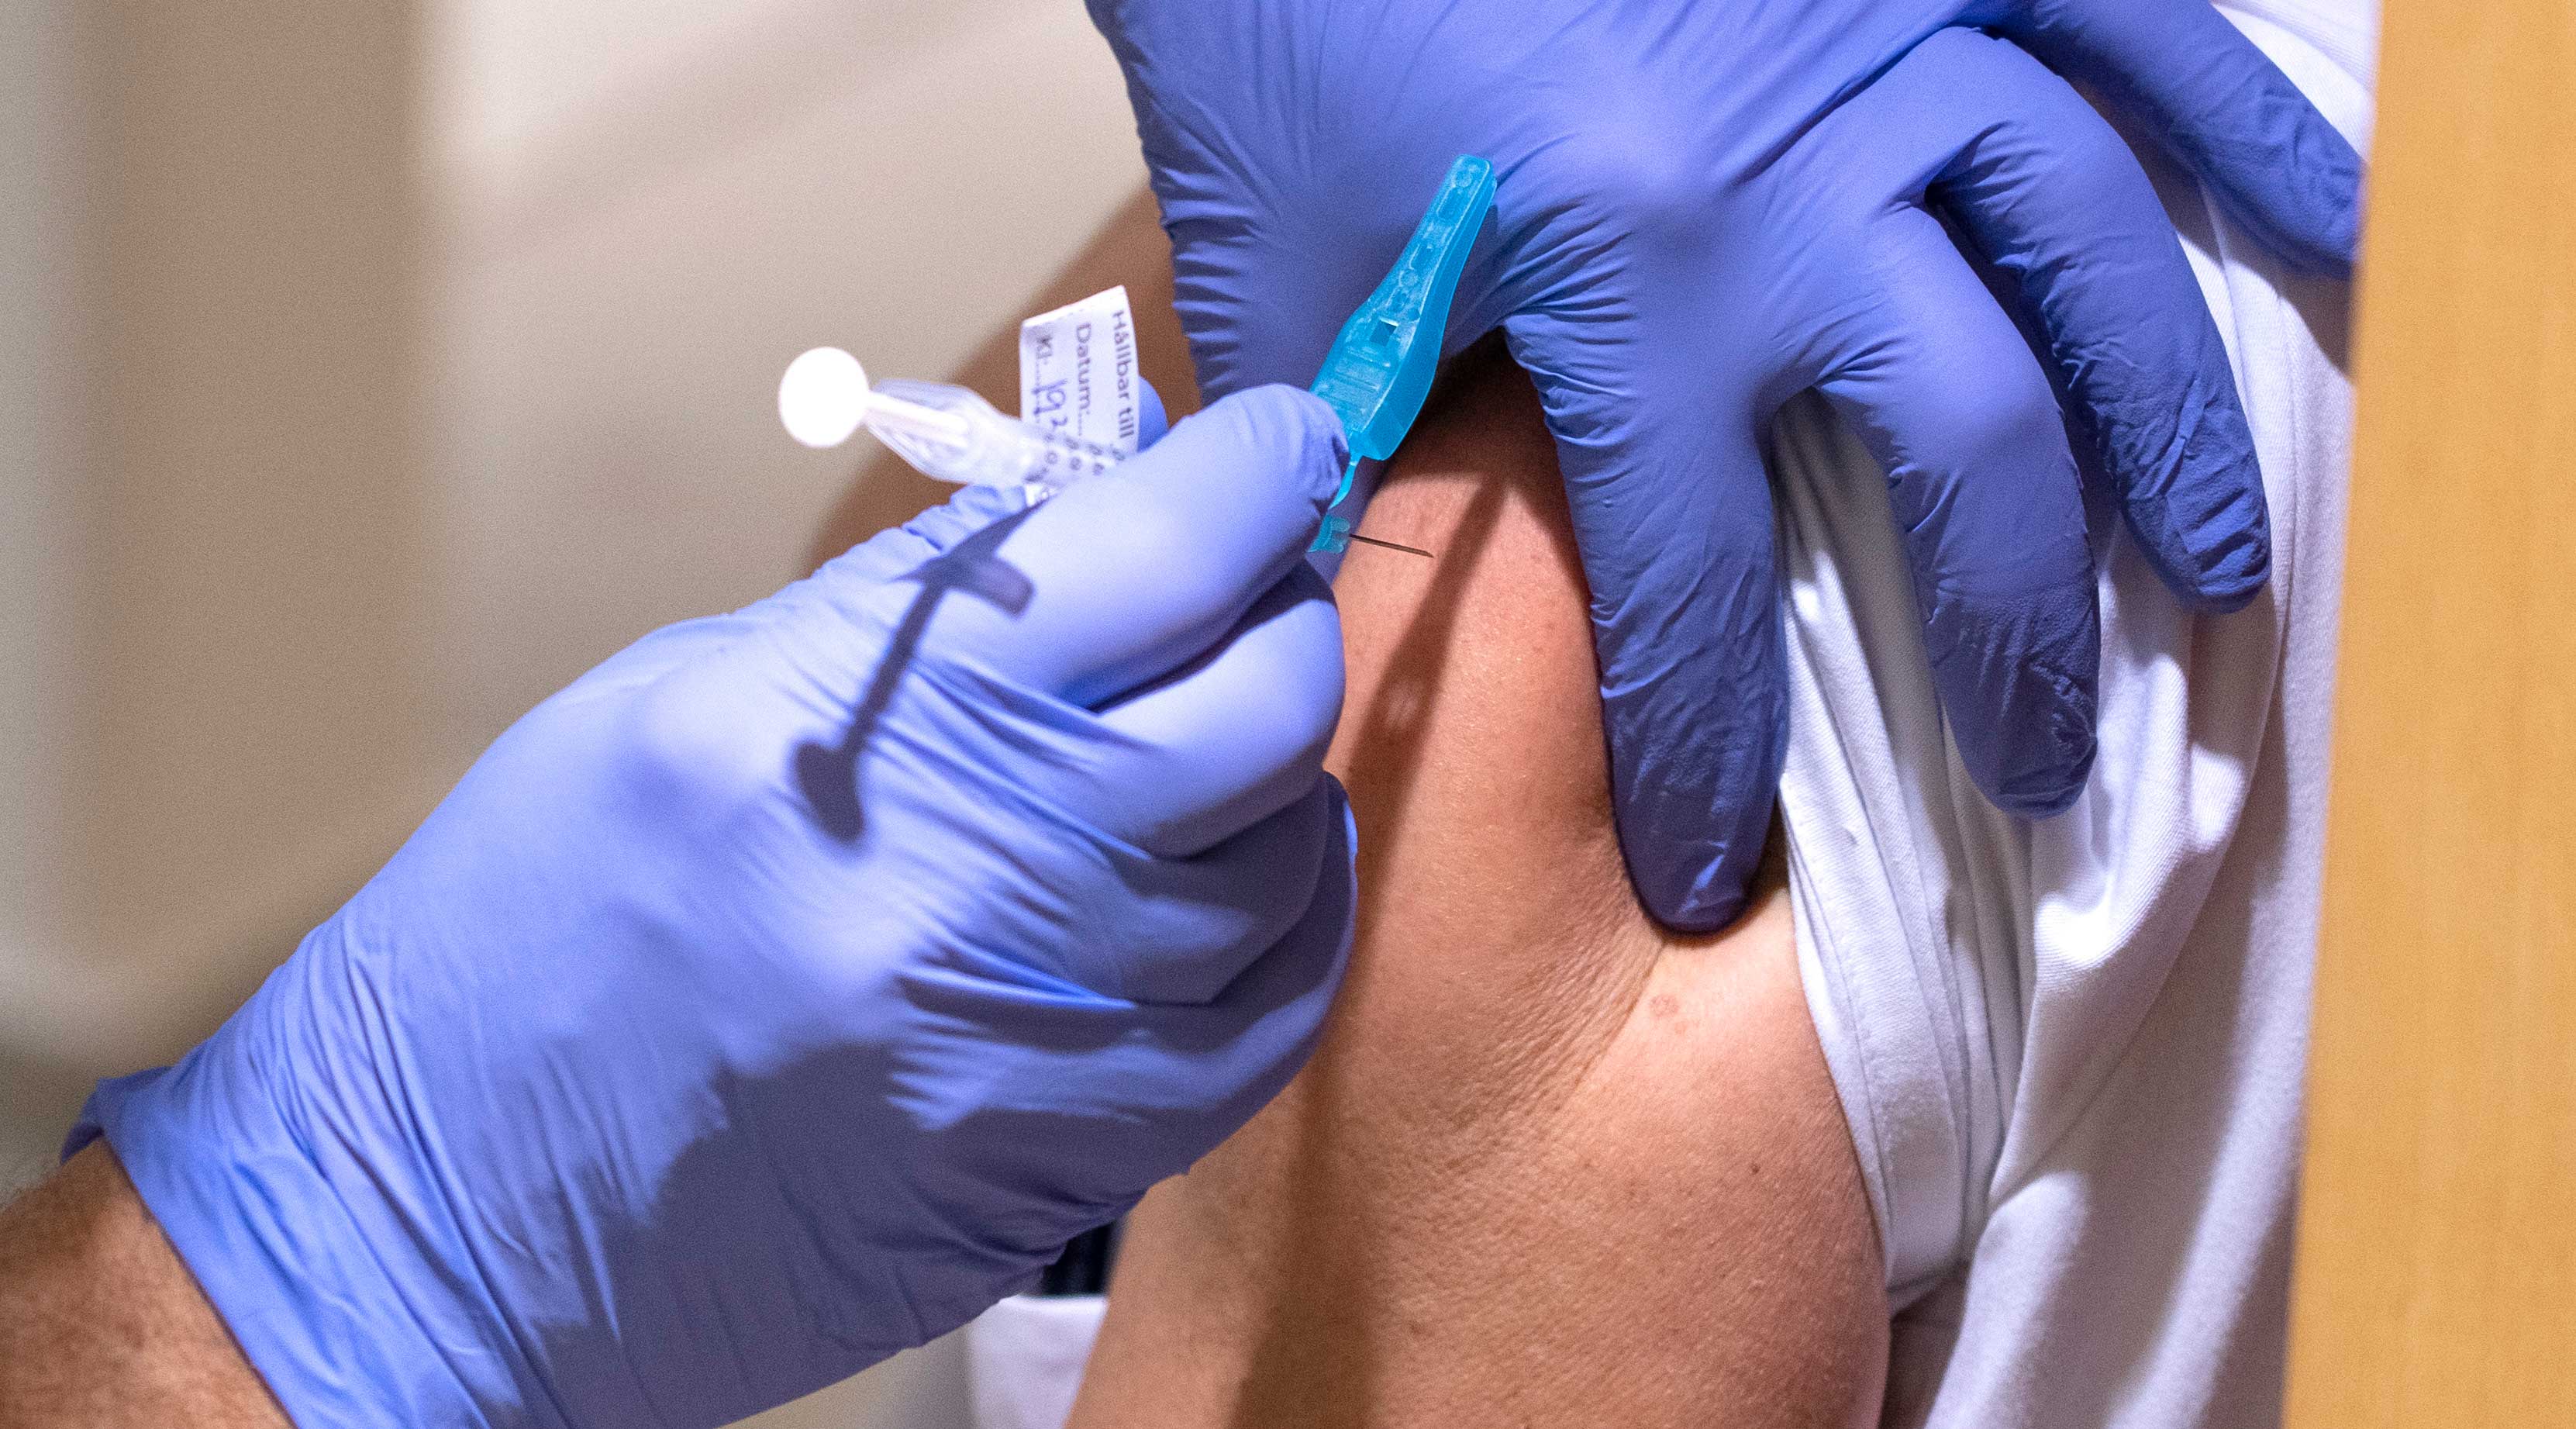 Närbild på en arm med vaccinationsspruta